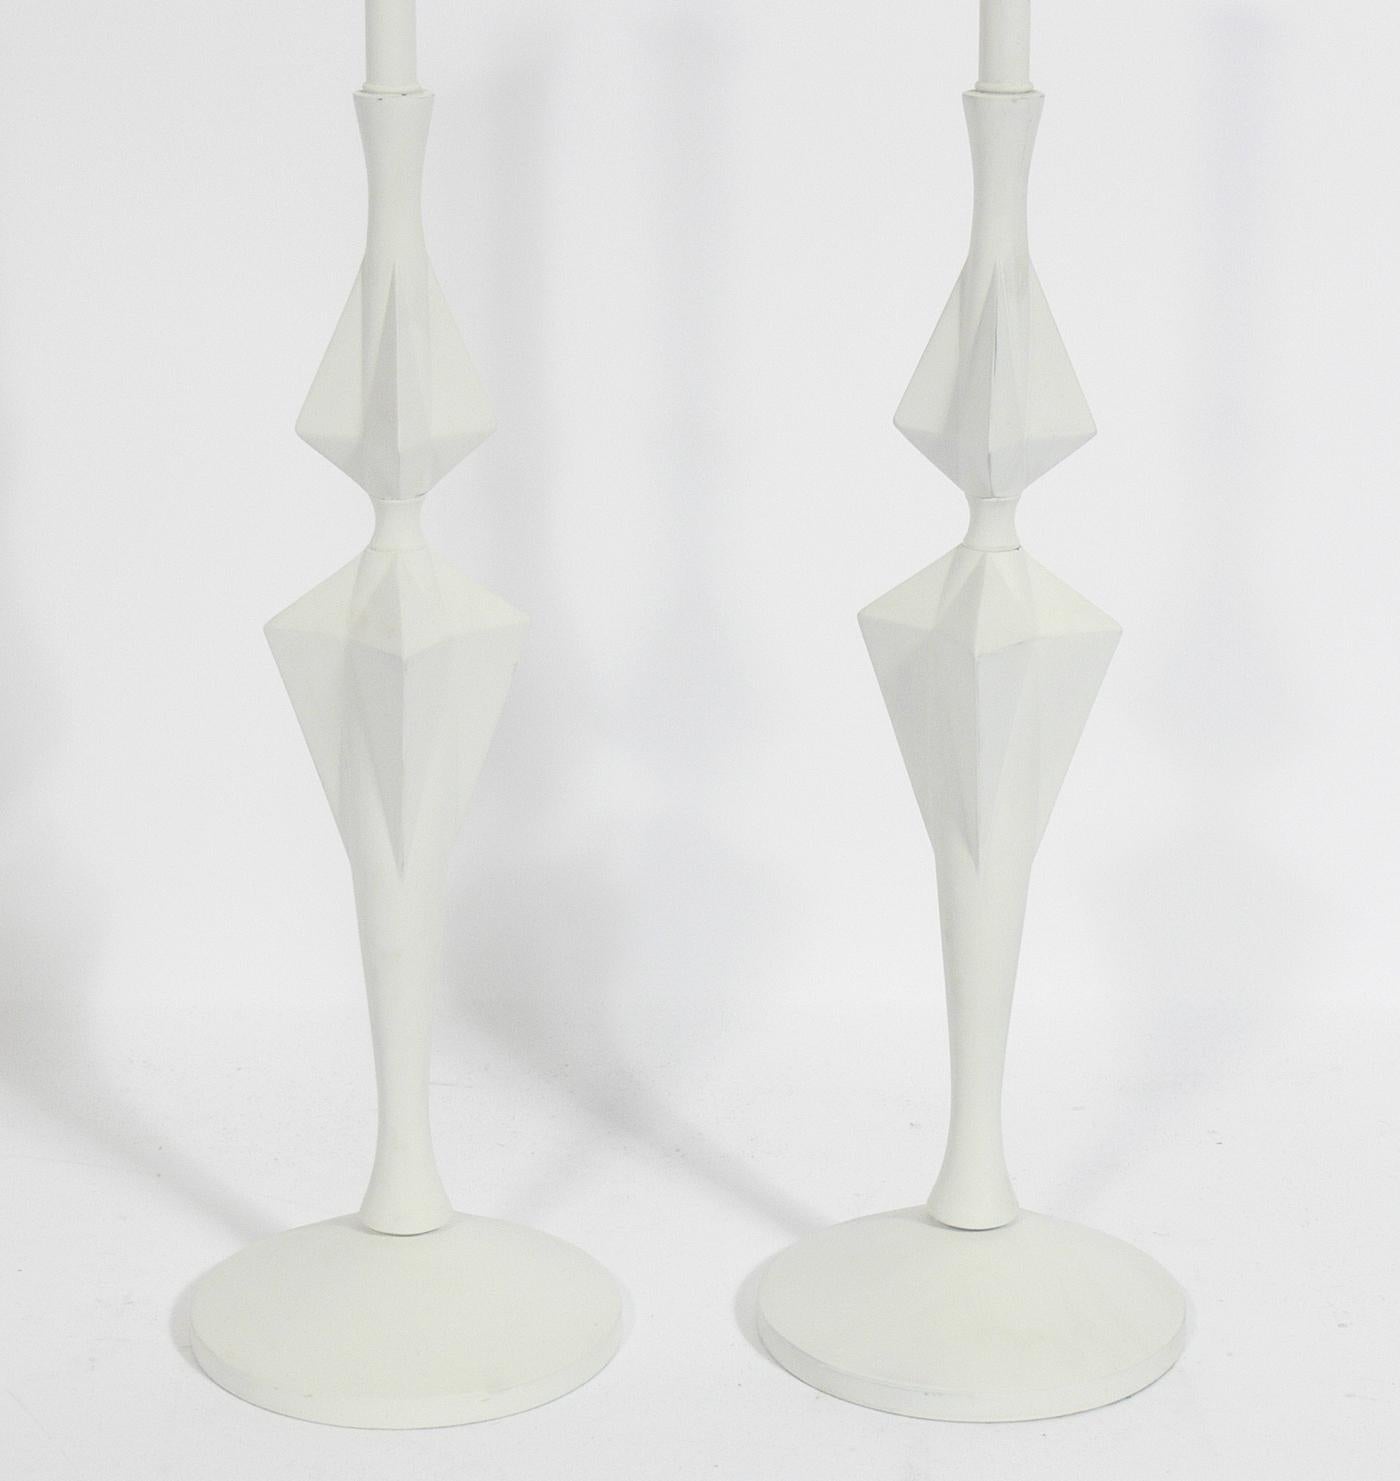 Paire de lampes blanches sculpturales, à la manière de Diego Giacometti, probablement américaines, vers les années 1950. Ils ont été recâblés et sont prêts à être utilisés. Le prix indiqué comprend les teintes.